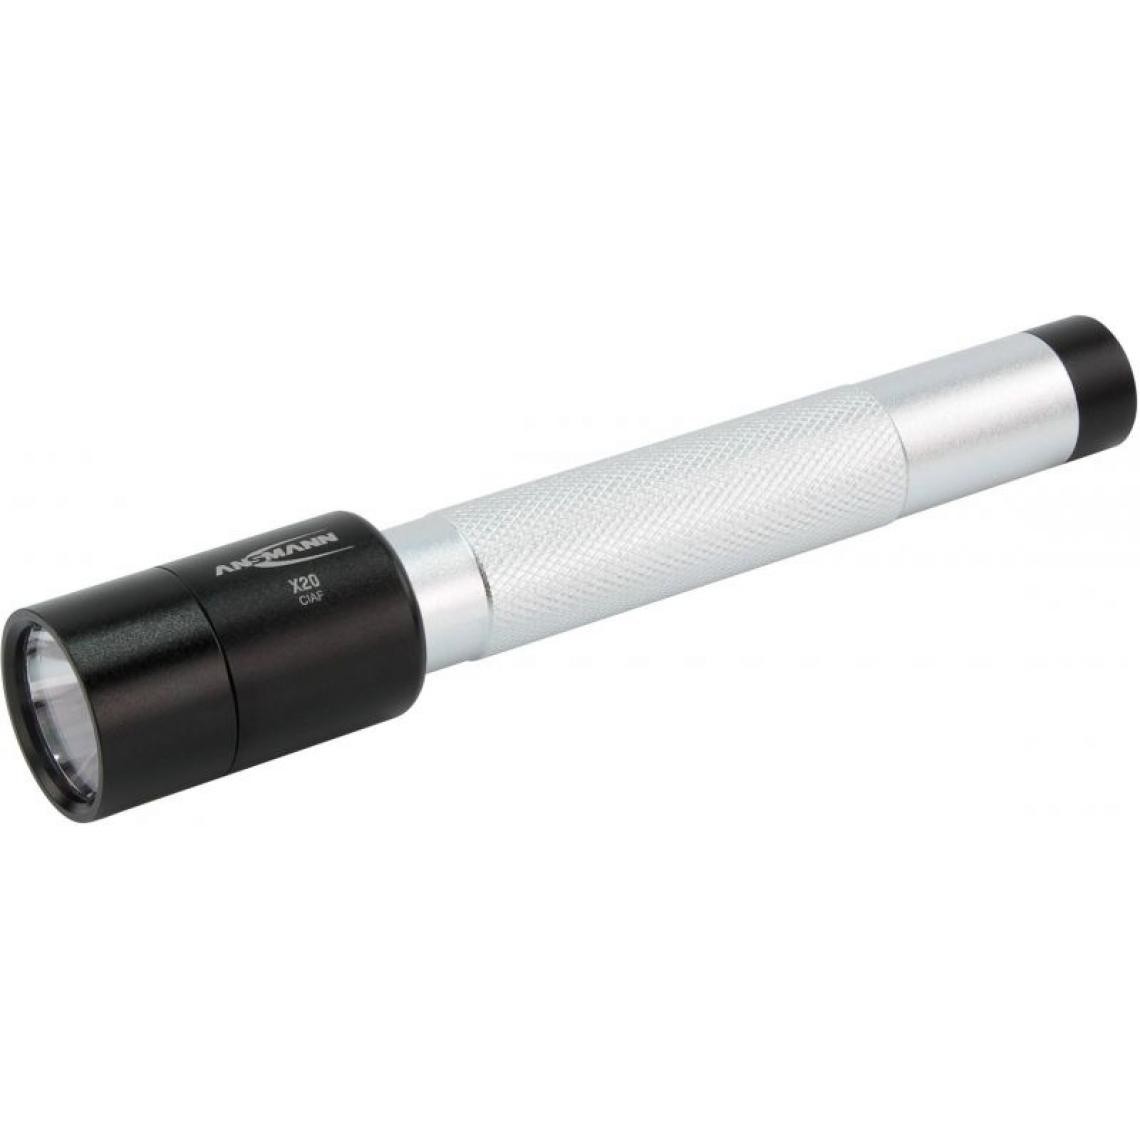 Inconnu - Ansmann Torche Light x20, noir - Lampes portatives sans fil